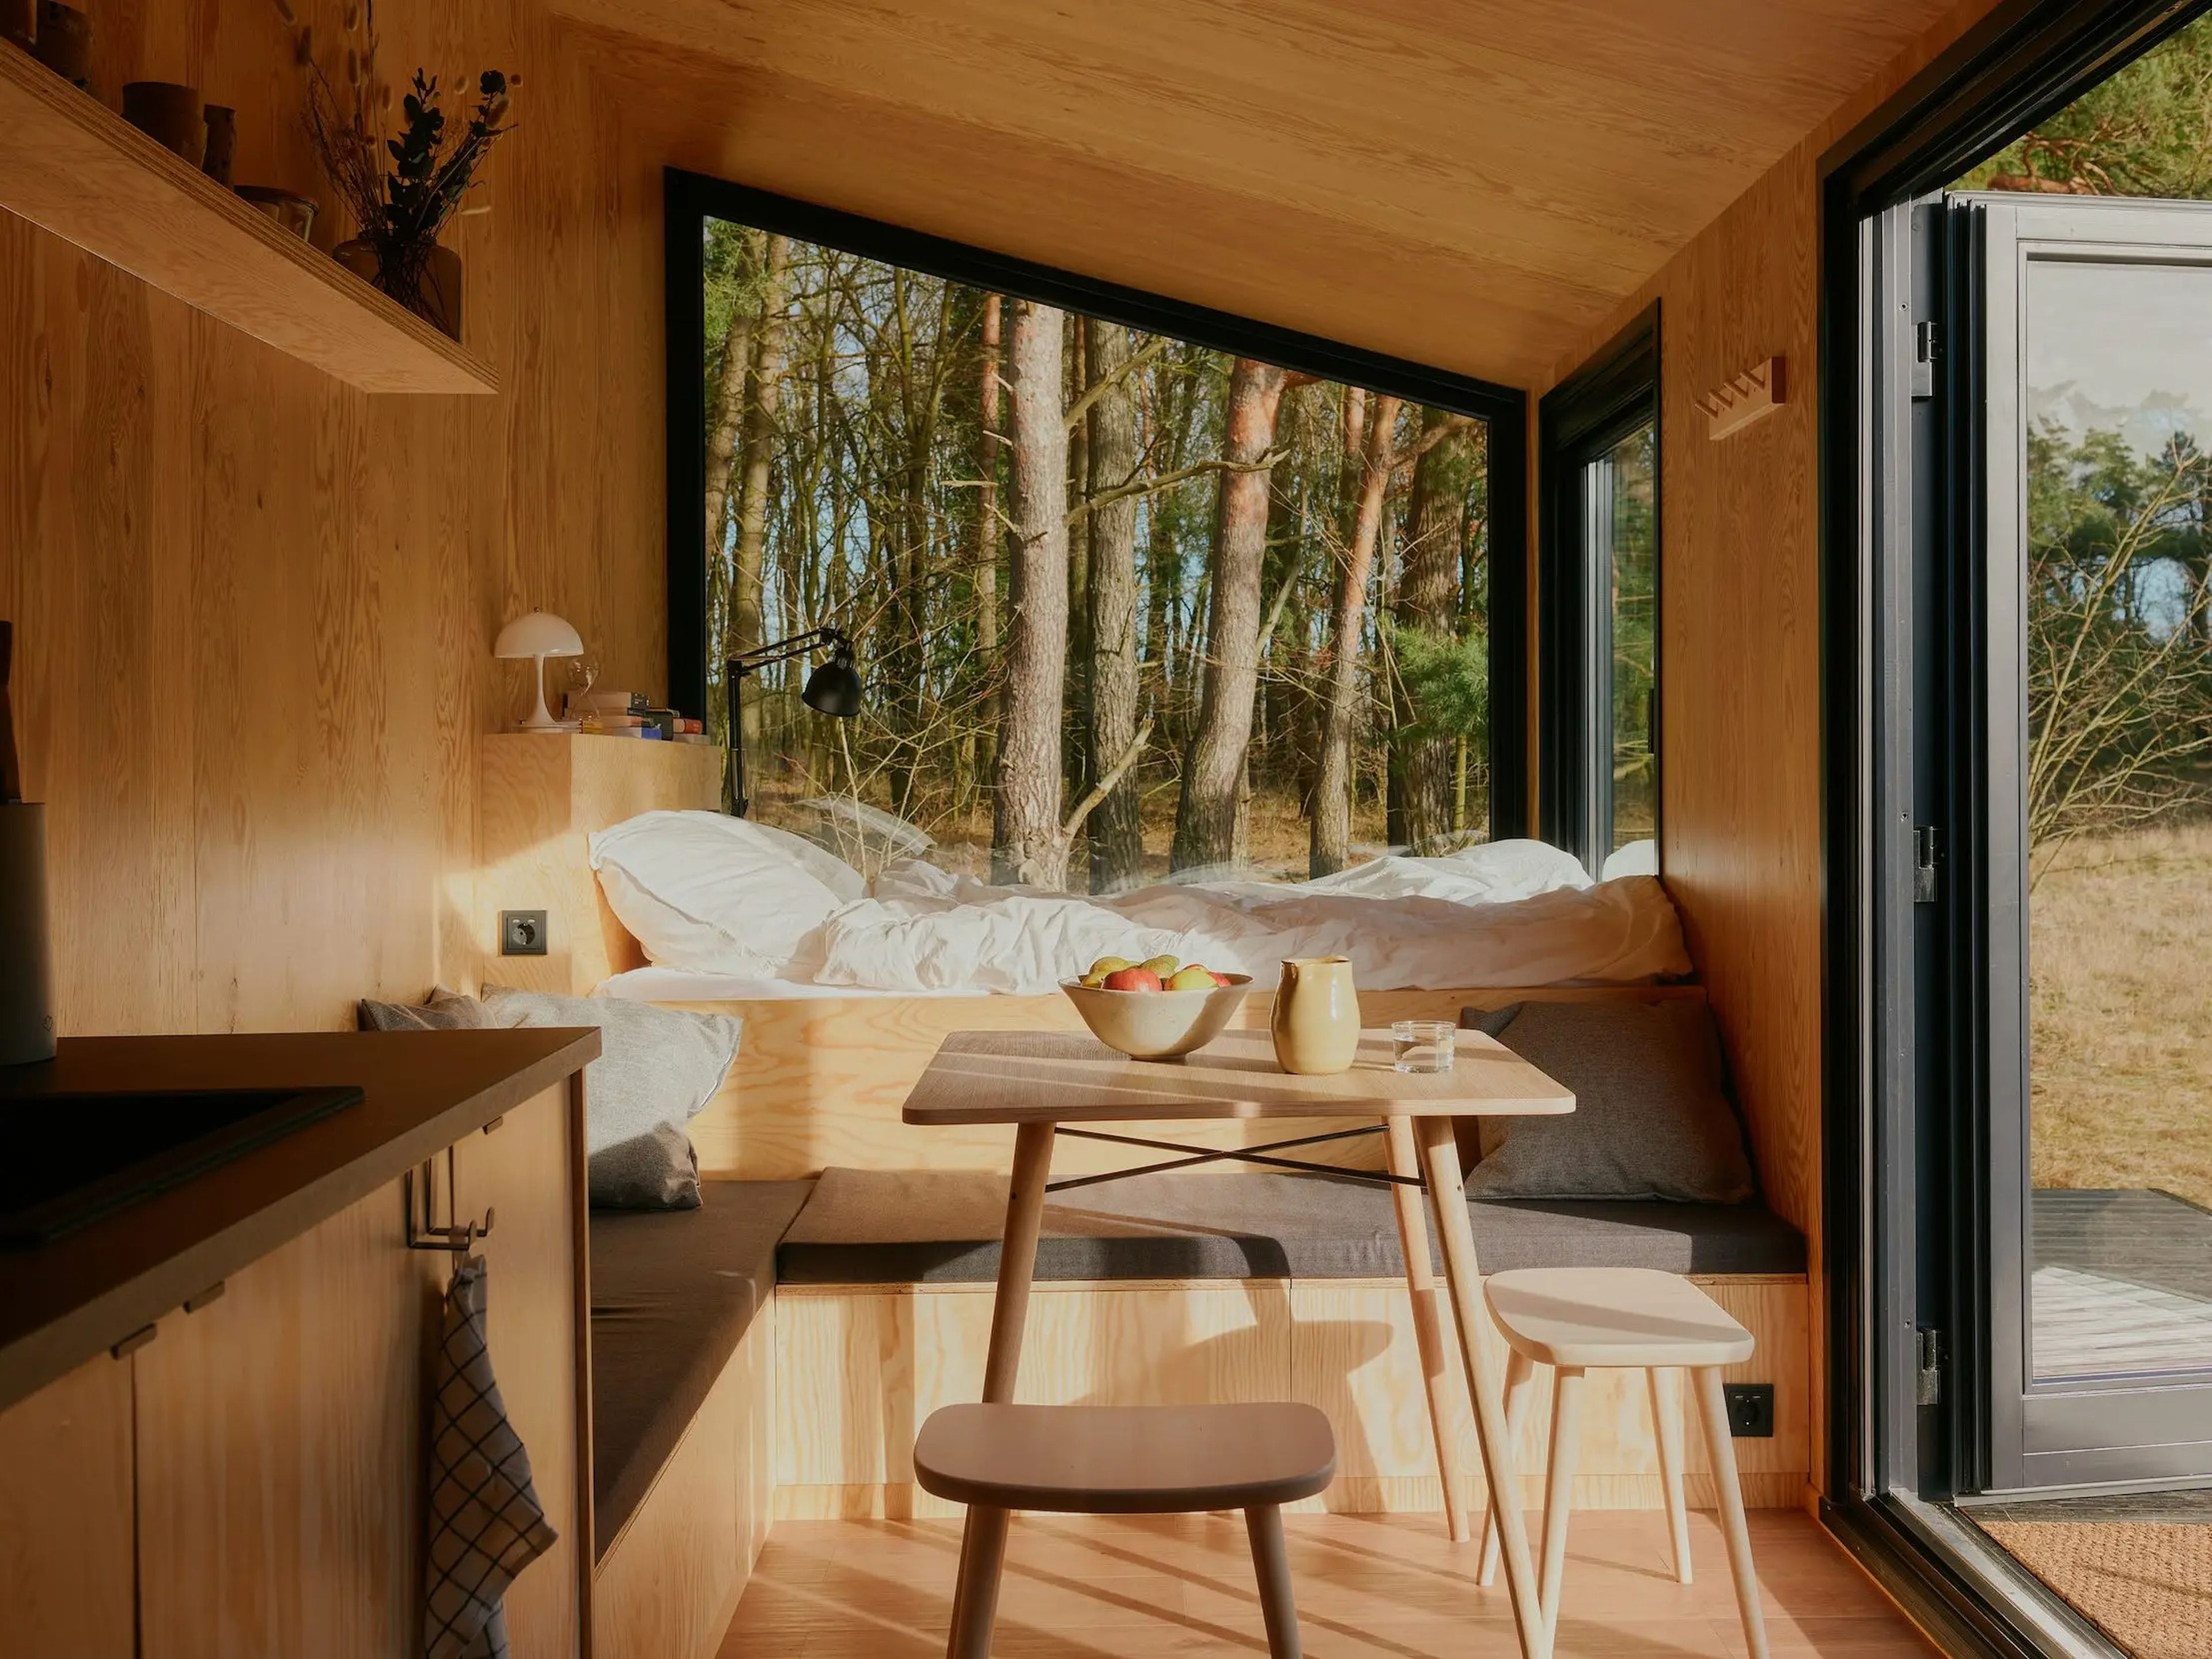 Una cama, una cocina, una mesa con sillas y ventanas que muestran la naturaleza en el exterior.